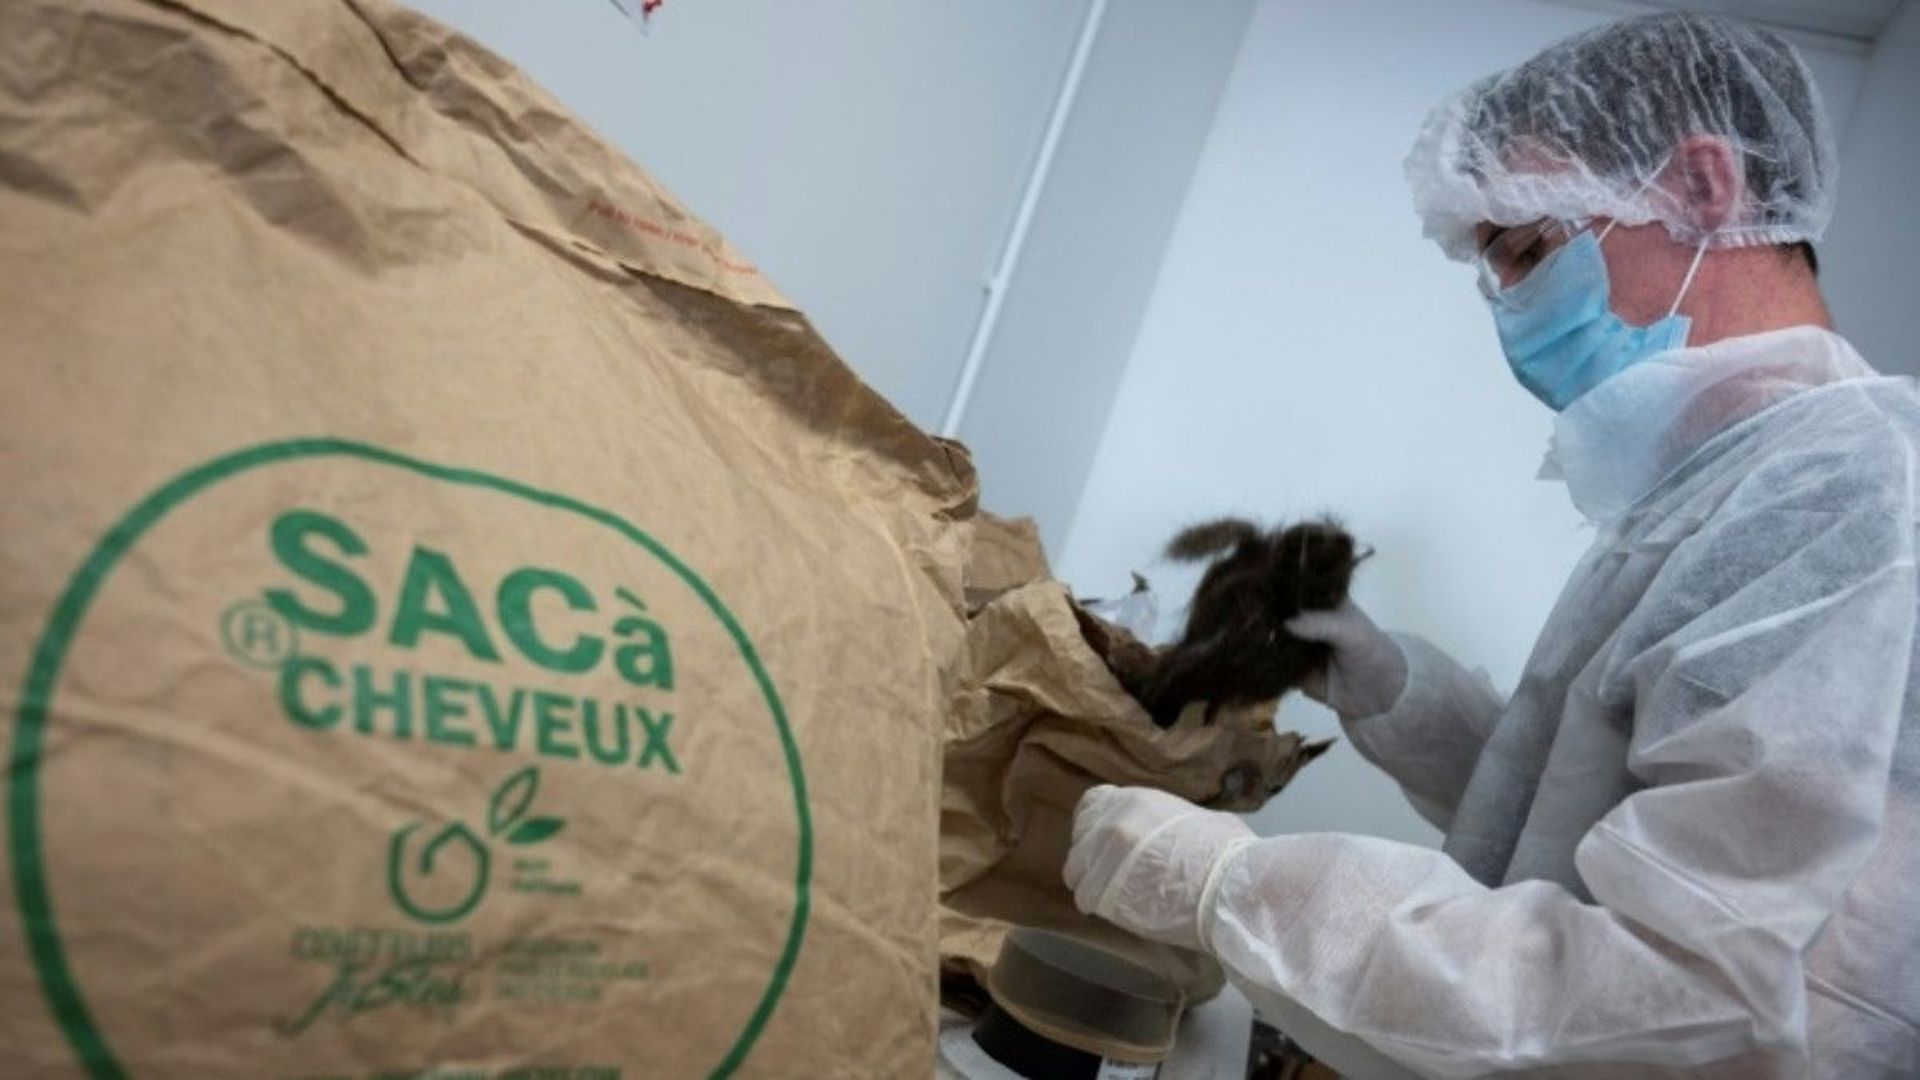 Un sac rempli de cheveux qui vont être transformés en boudins en polymères pour contribuer à la dépollution, au siège de l'Association "Coiffeurs justes", à Brignoles le 8 septembre 2020.